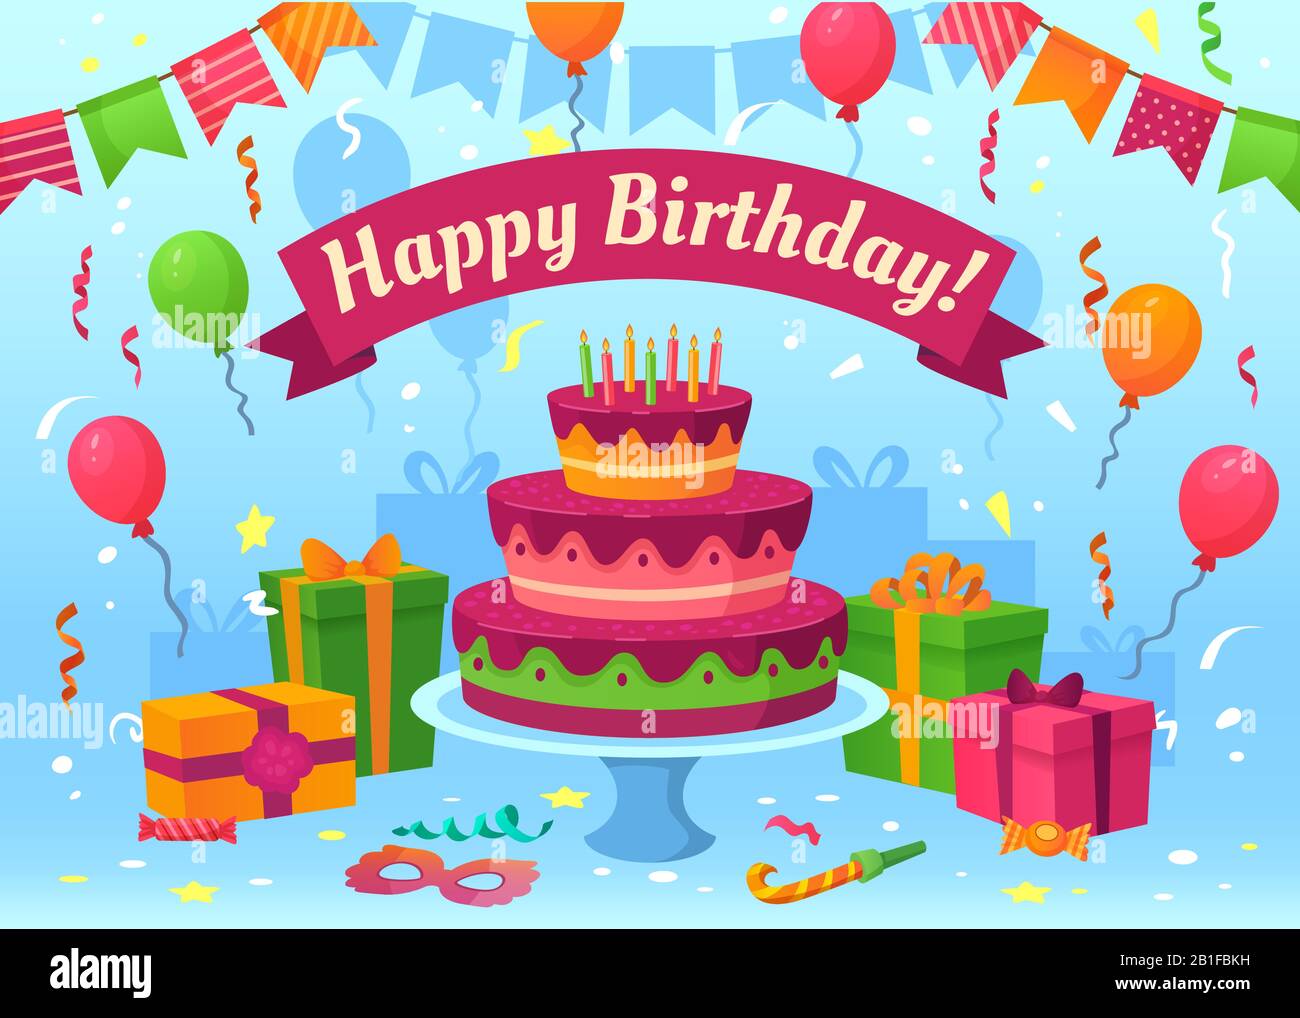 Cartoon Glückliche Geburtstagskarte. Festgeschenke, Fahnen und Geburtstagballons. Flying Konfetti Grußkarten Vektor-Illustration Stock Vektor